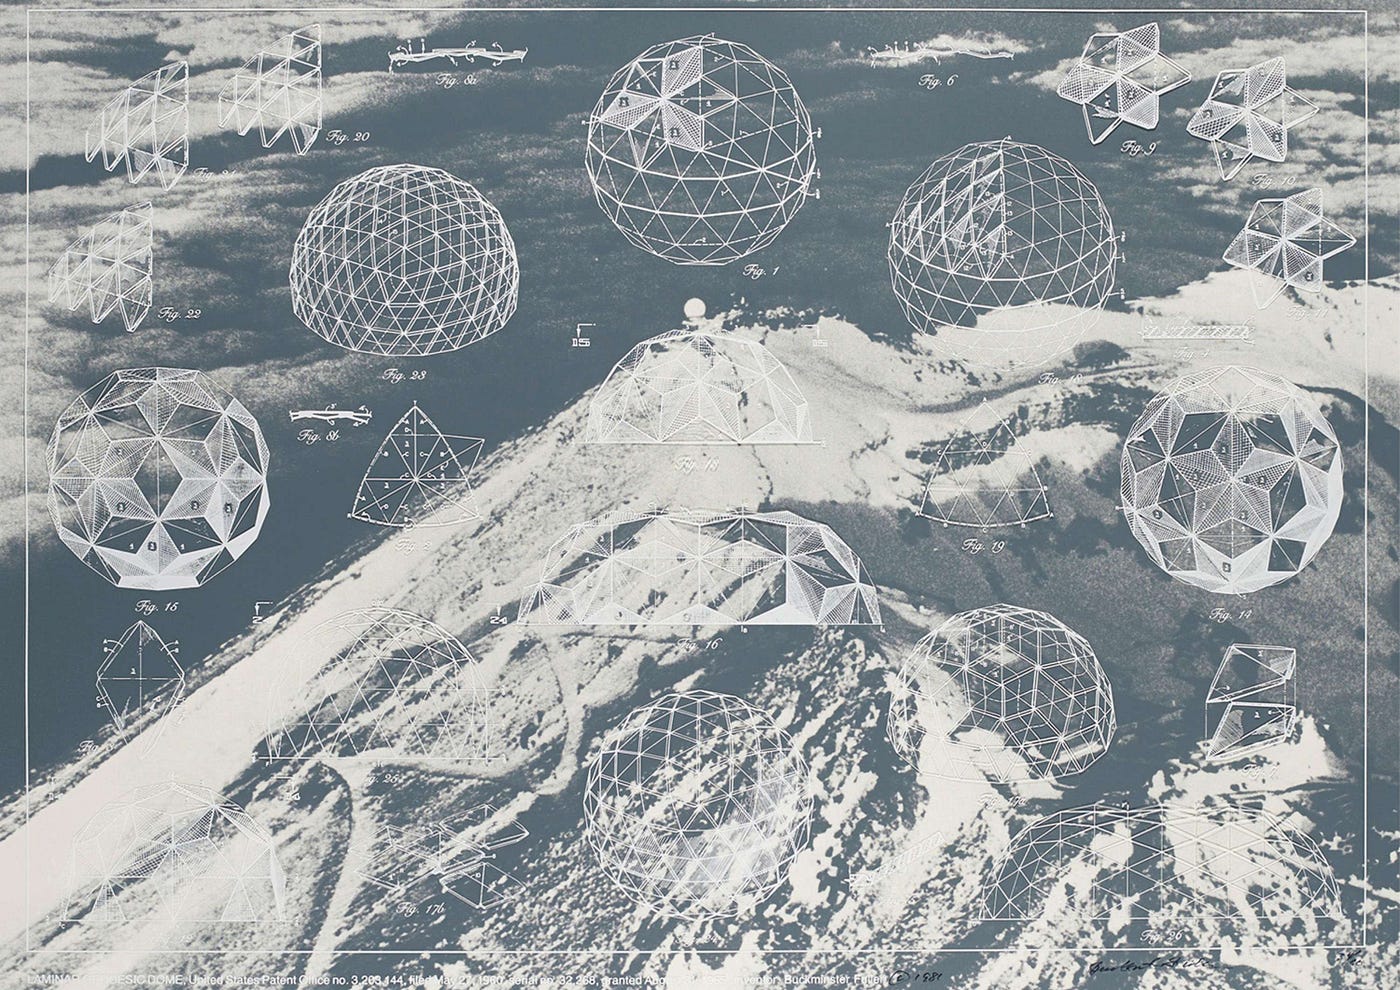 Image by Buckminster Fuller